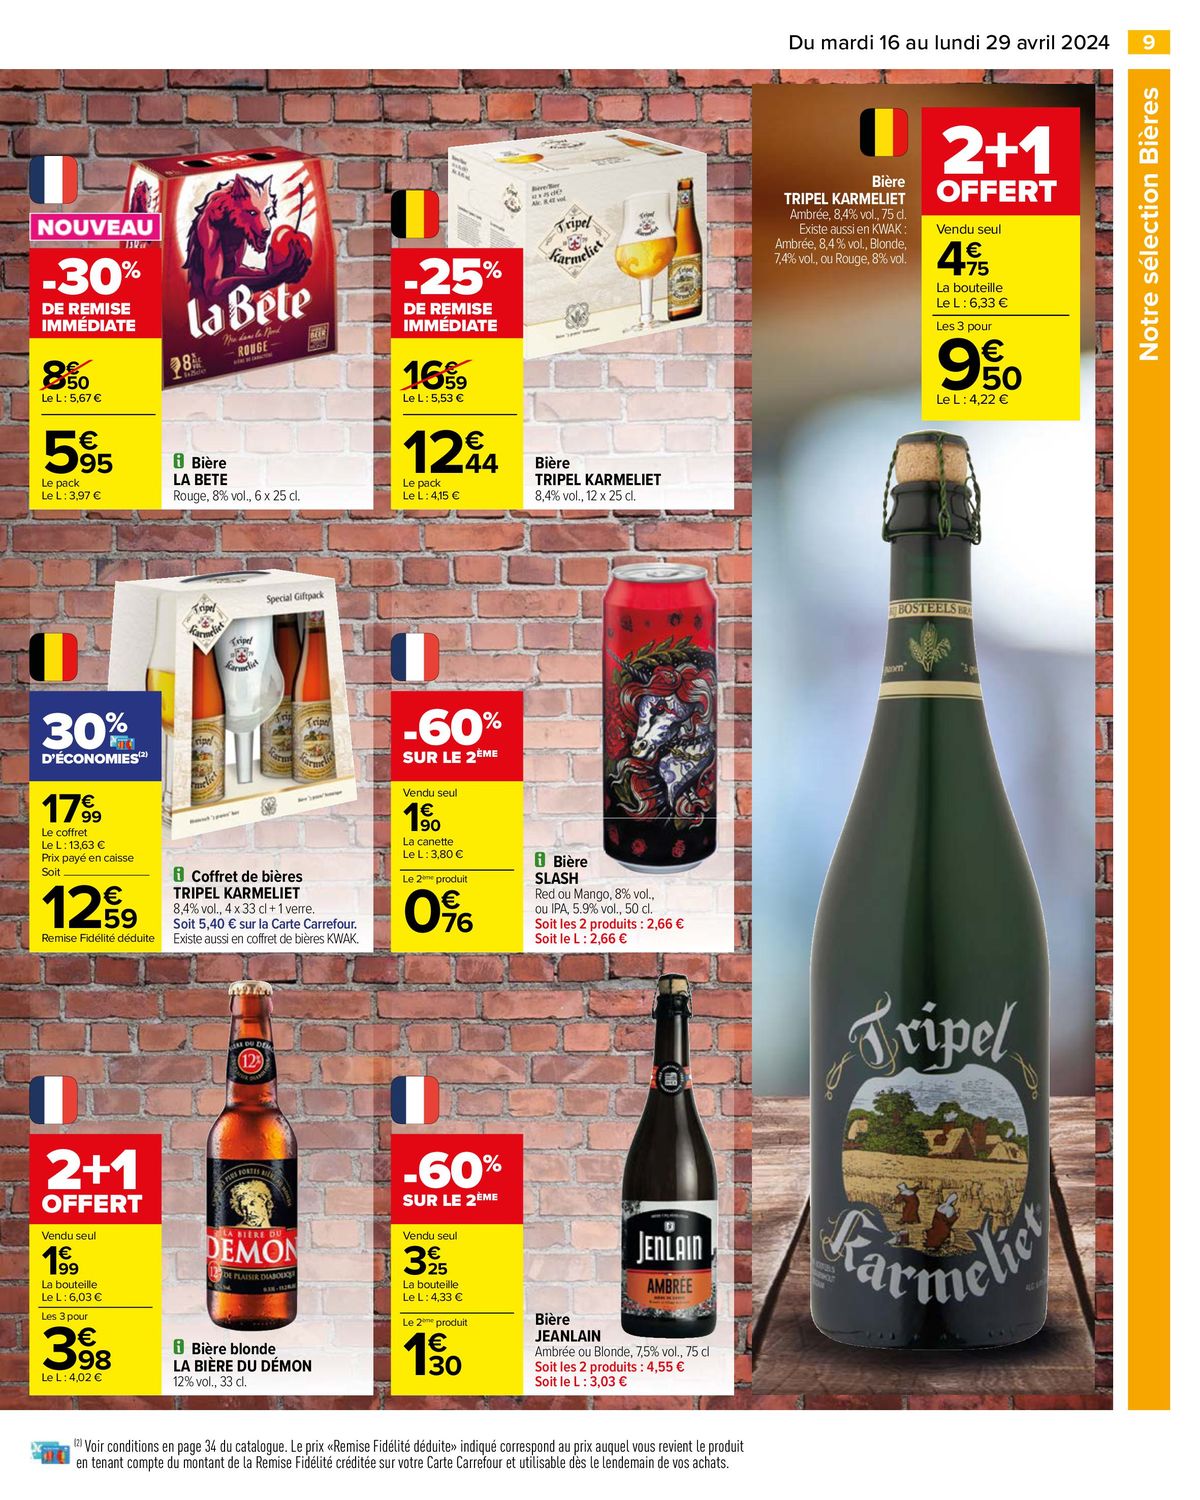 Catalogue Notre sélection Bières, page 00011